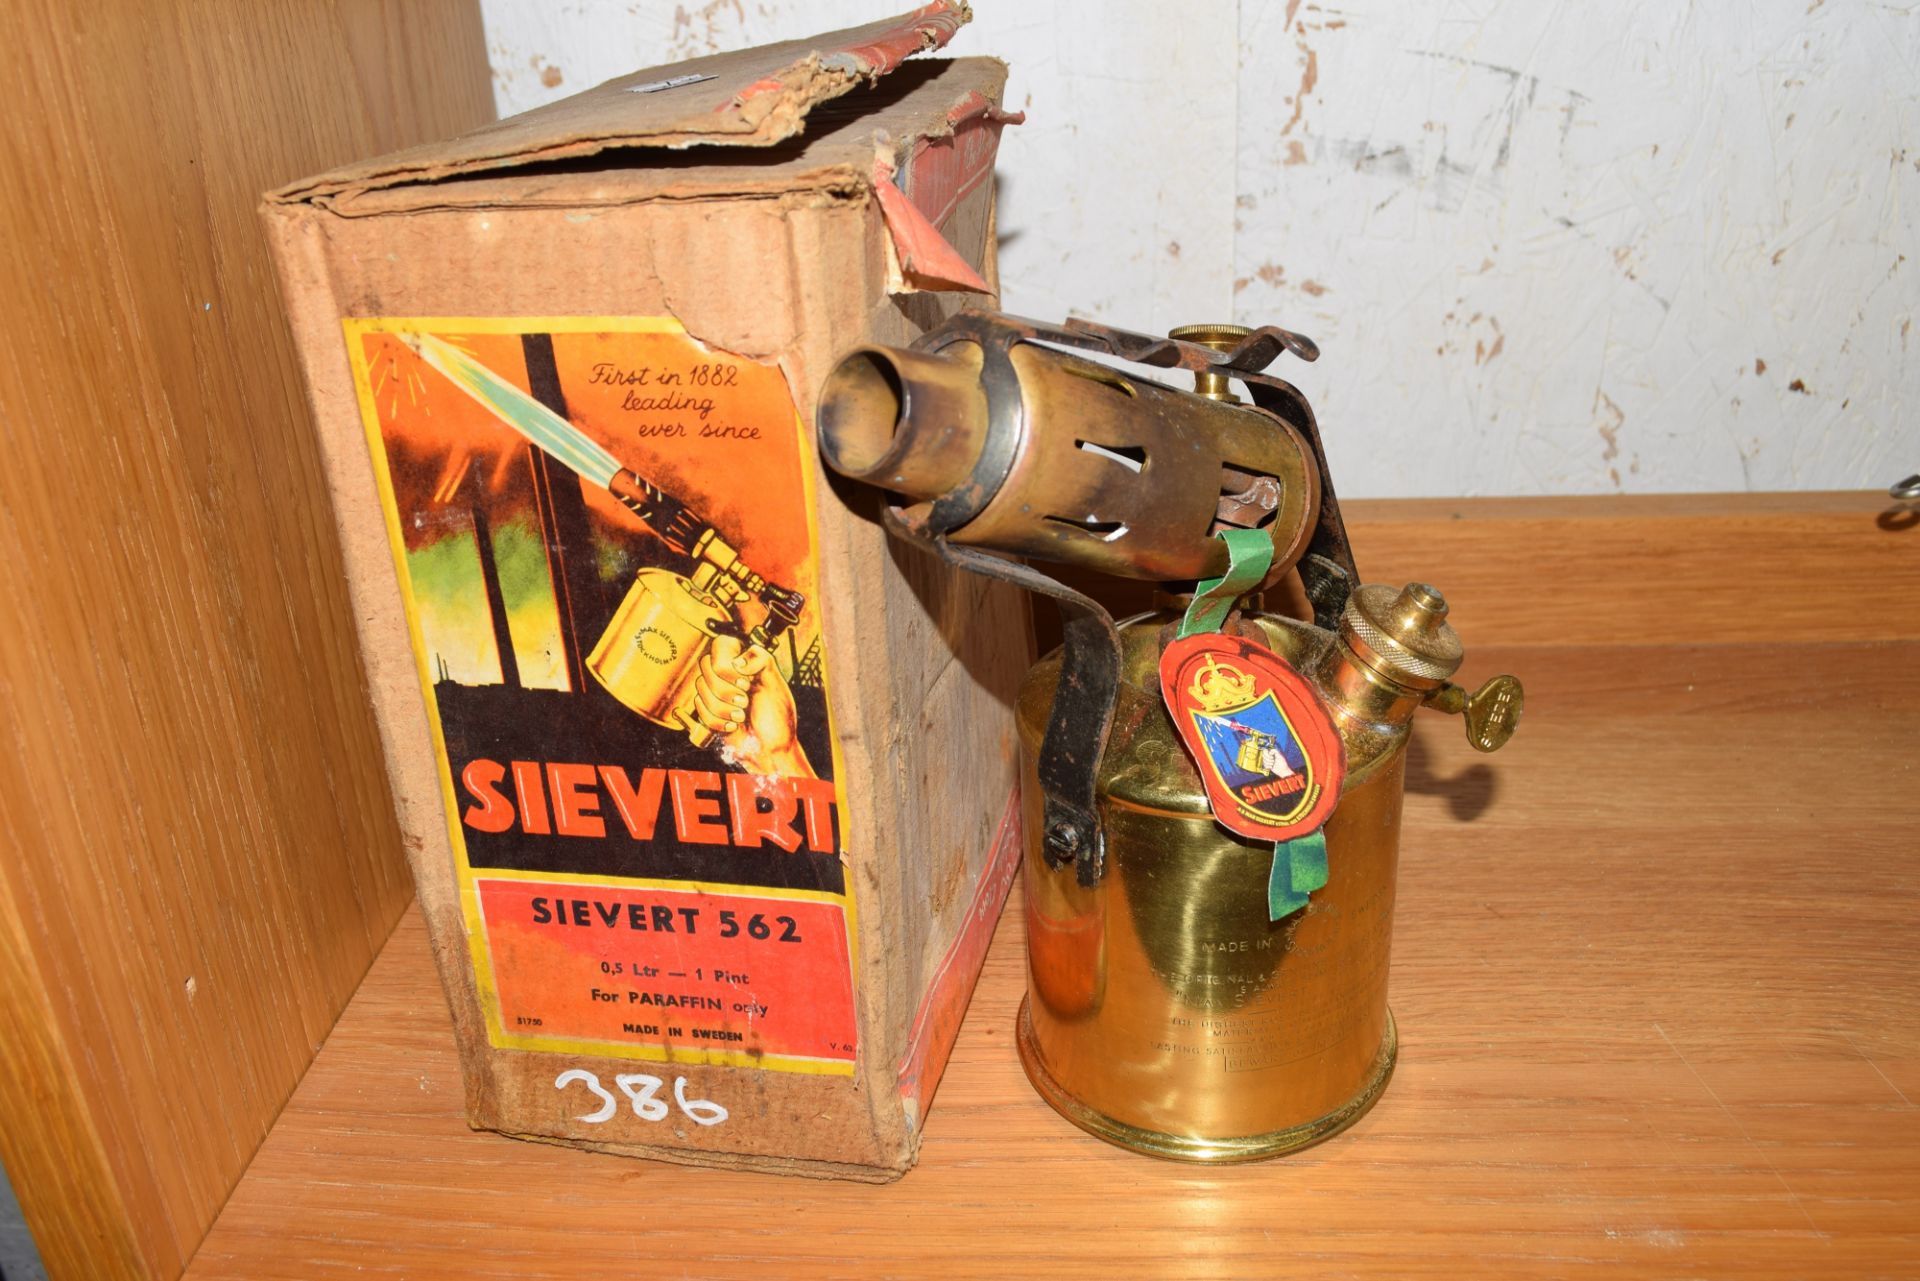 Sivert 562 brass blow lamp